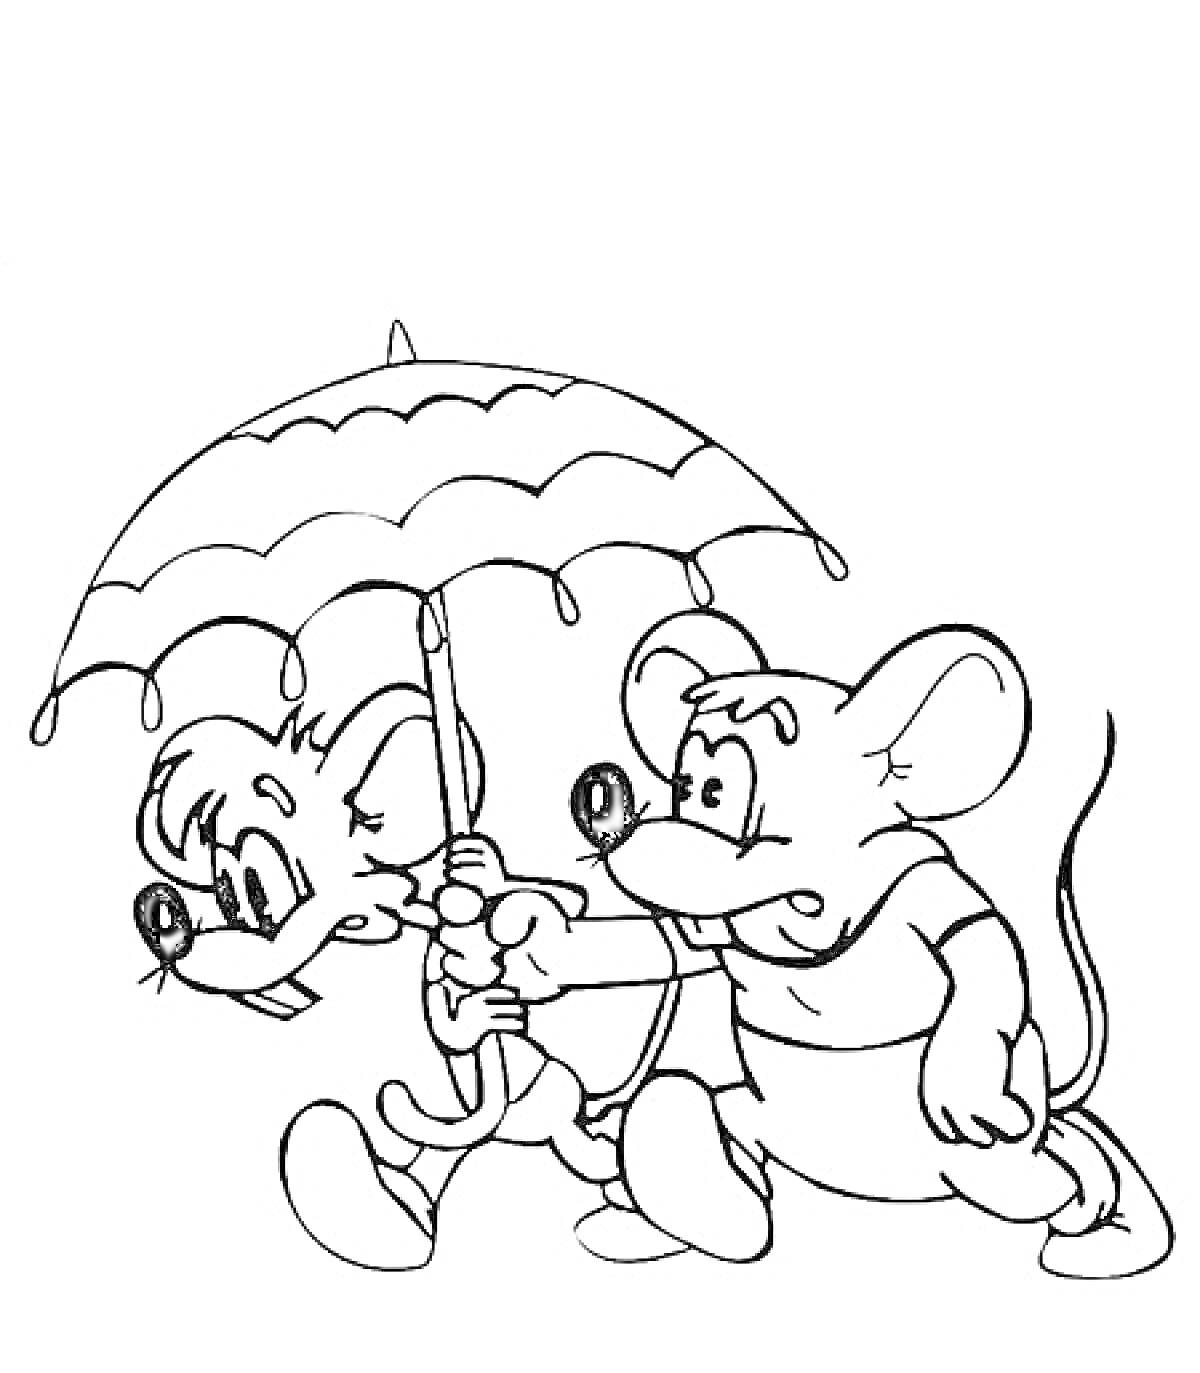 Раскраска Две мыши под зонтиком (одна мышь держит зонтик, другая за нее держится)